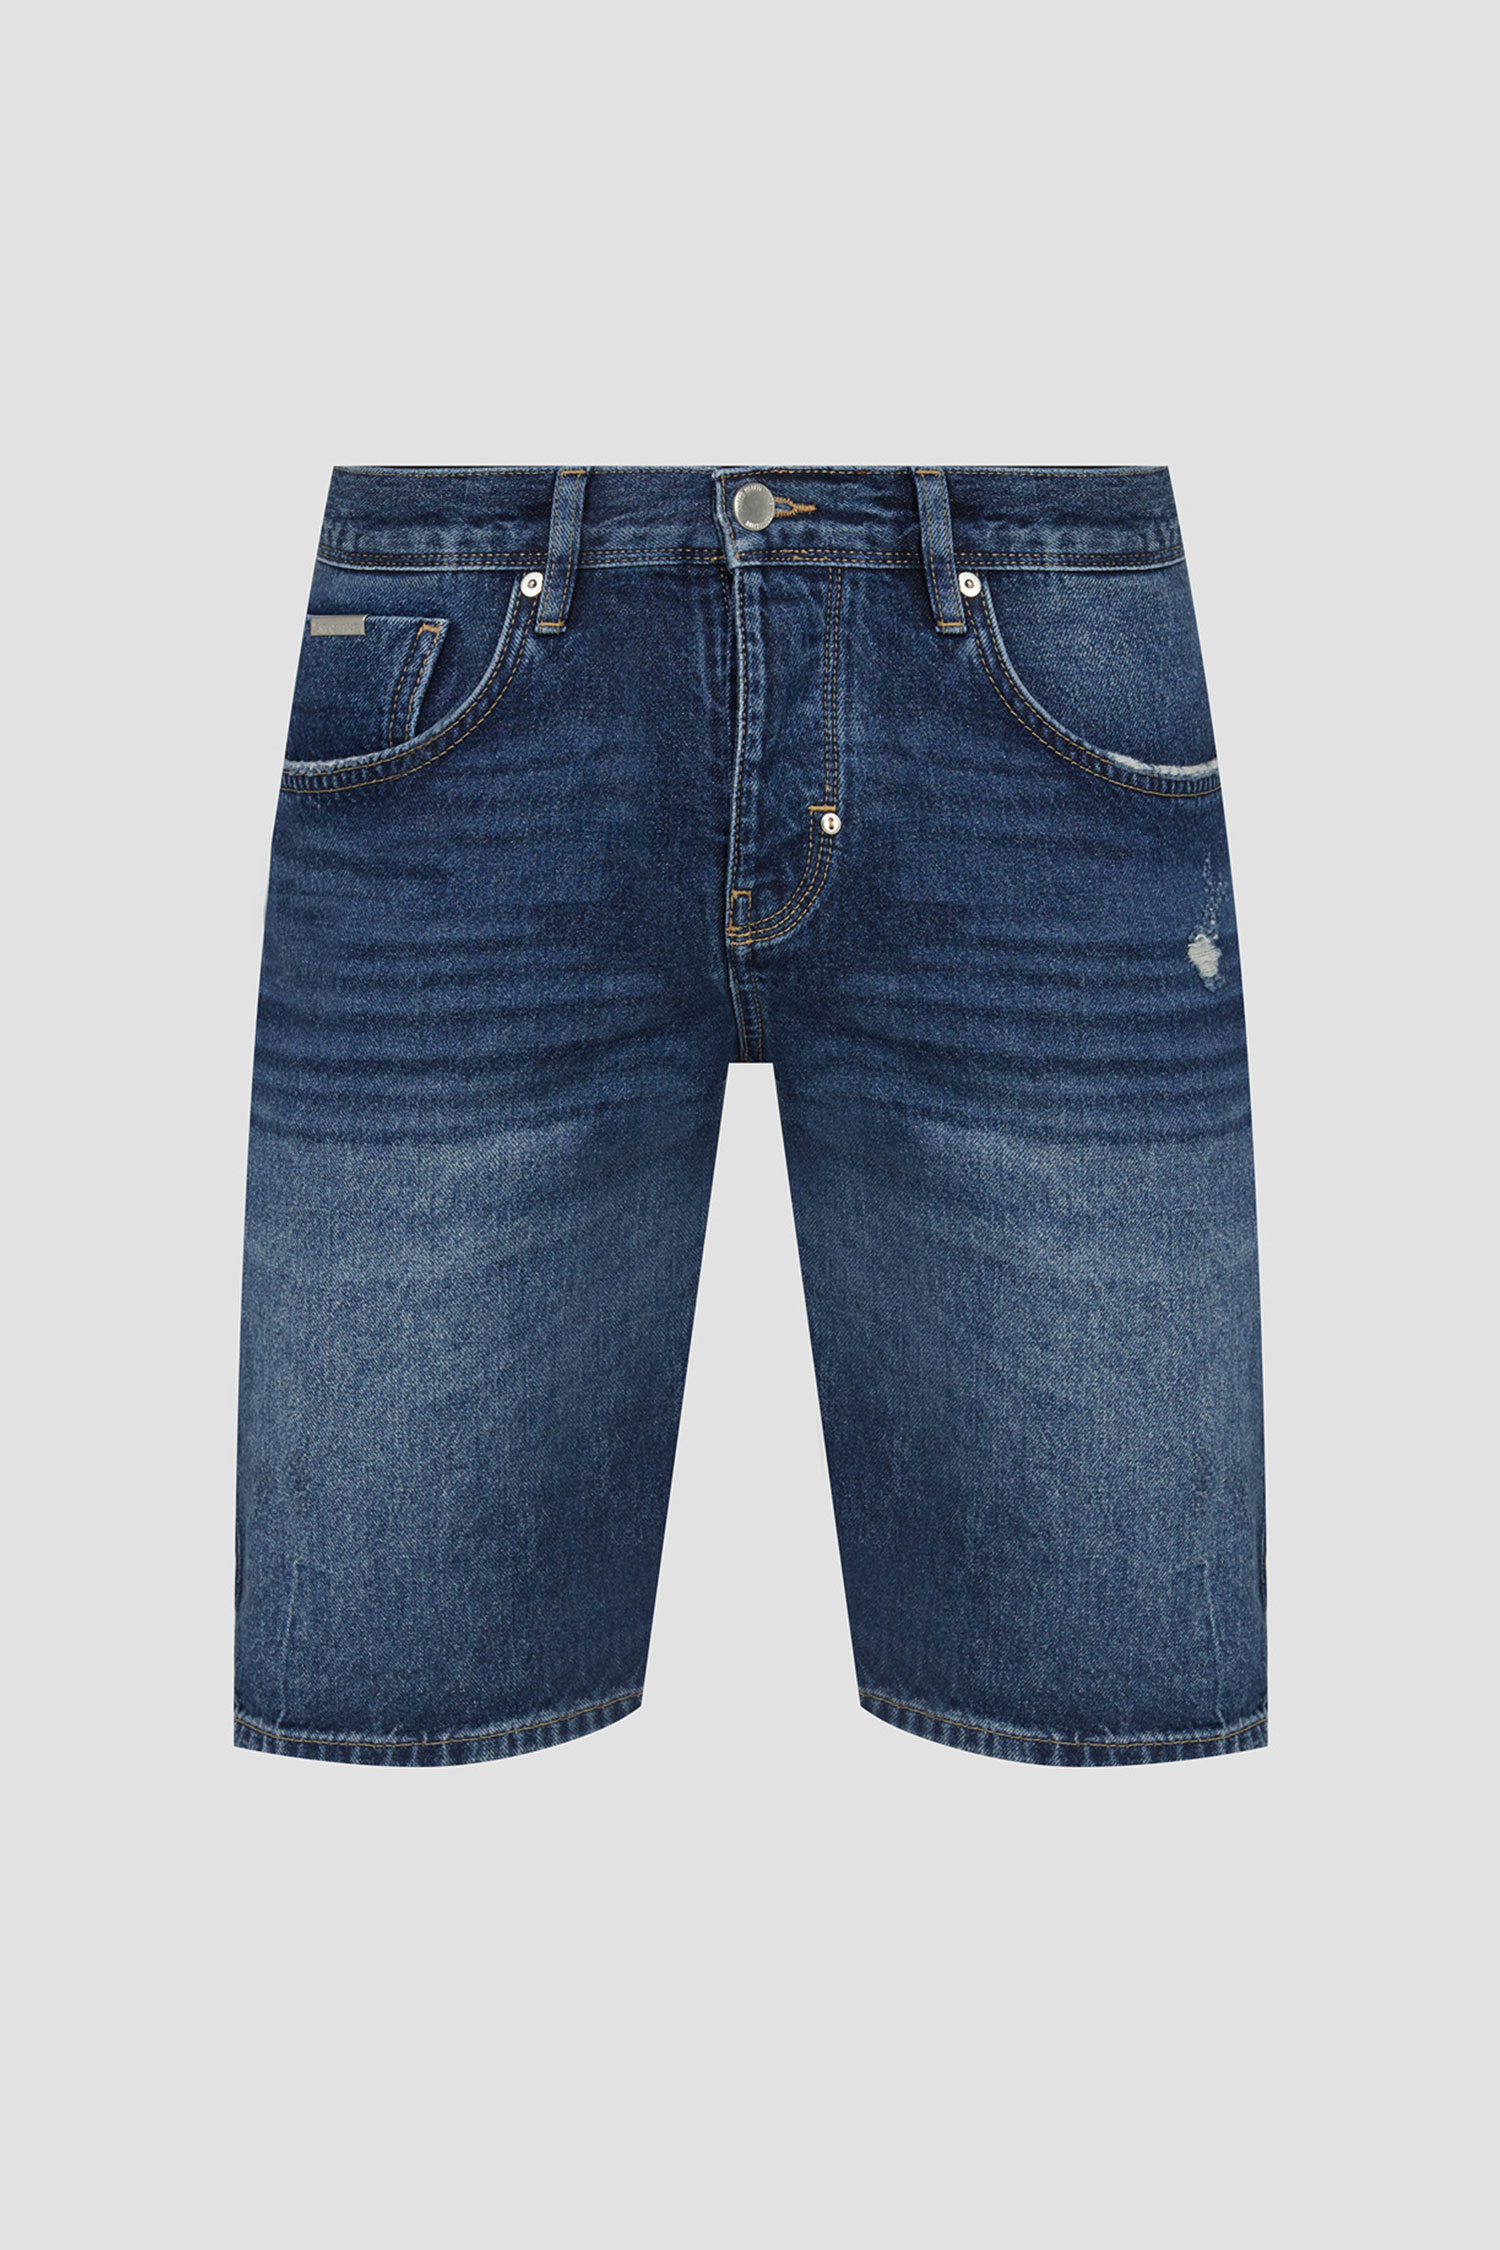 Мужские синие джинсовые шорты Antony Morato MMDS00076.FA750461;7010